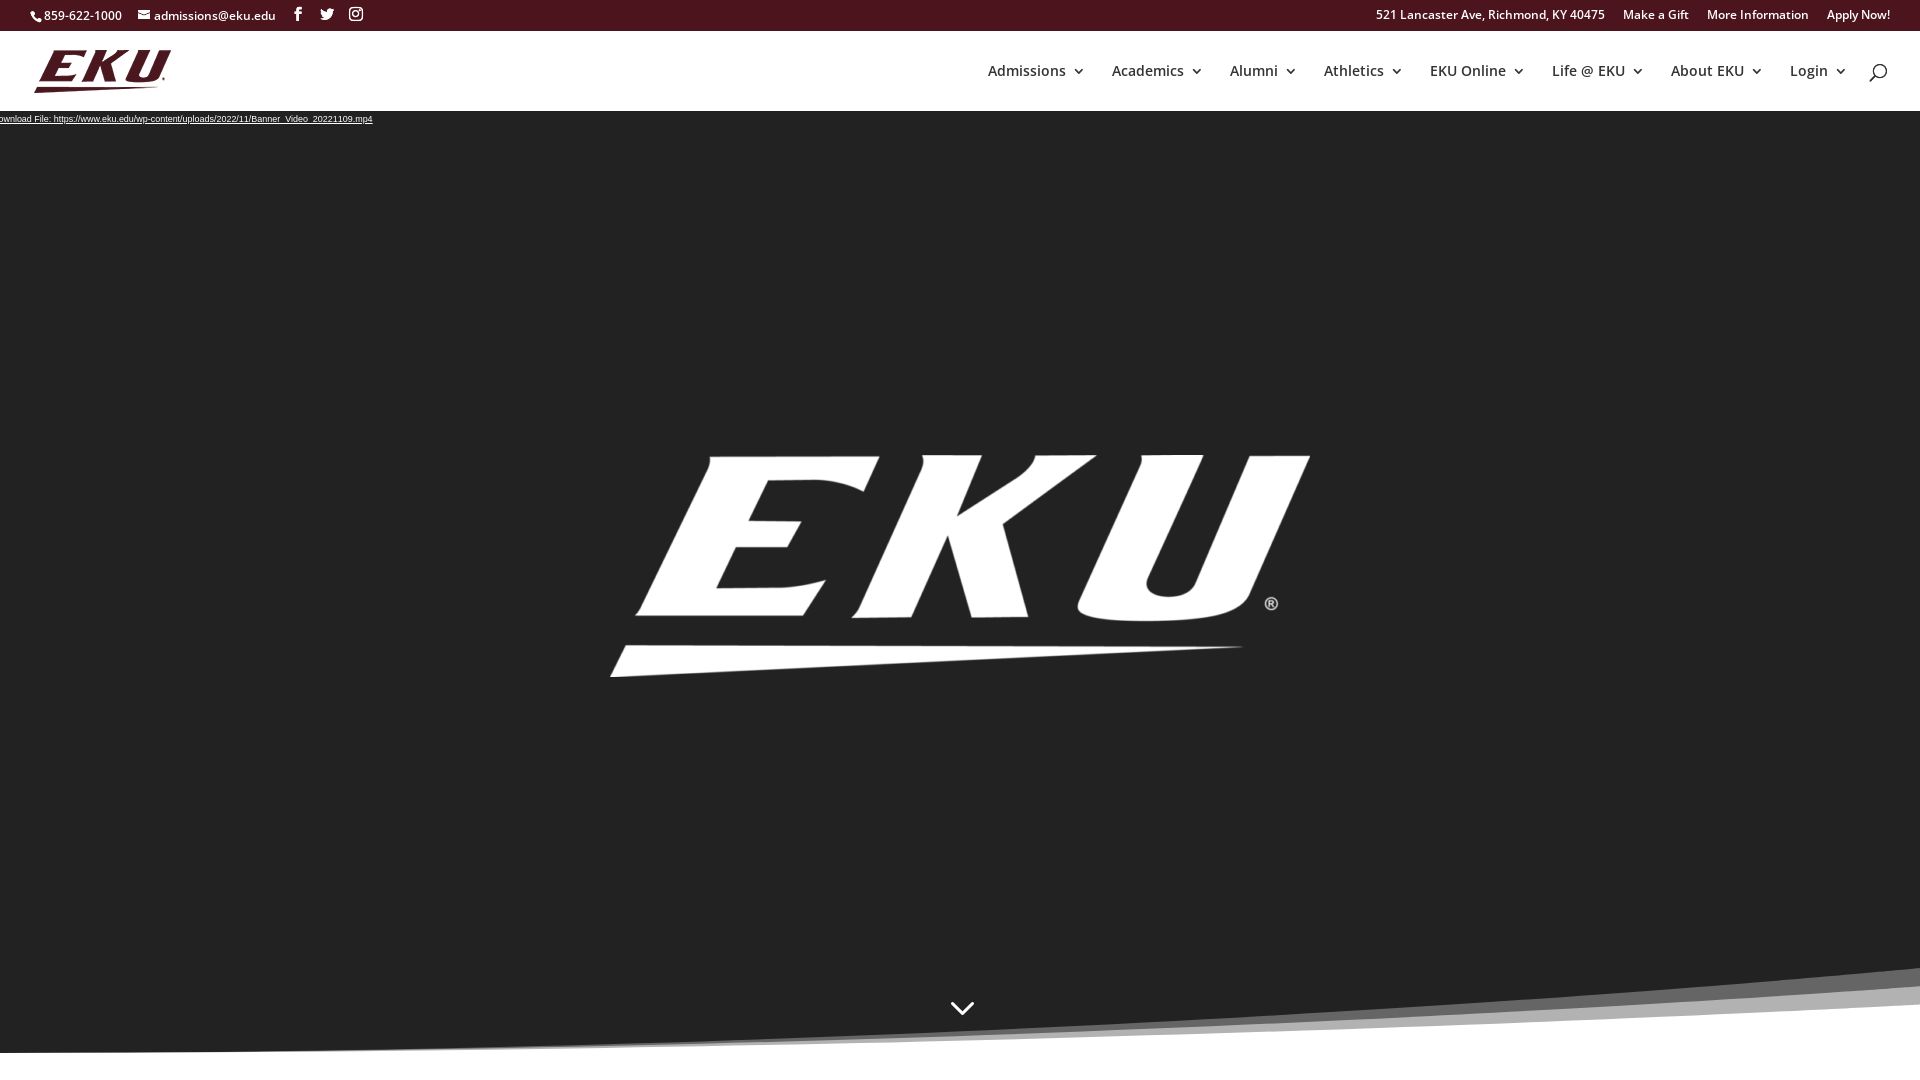 État du site web eku.edu est   EN LIGNE